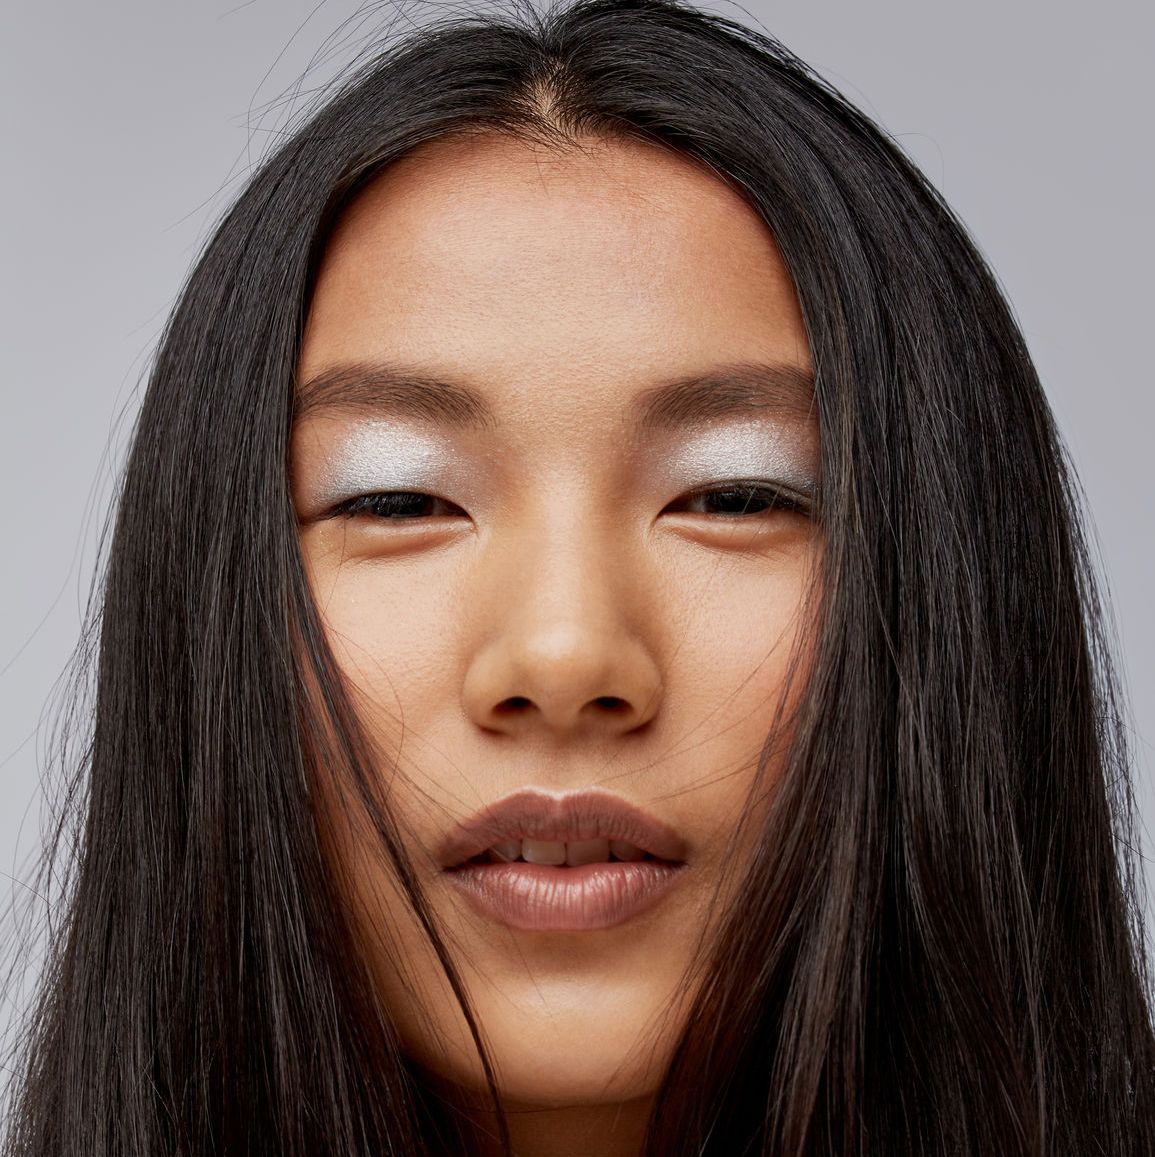 Asian makeup brands